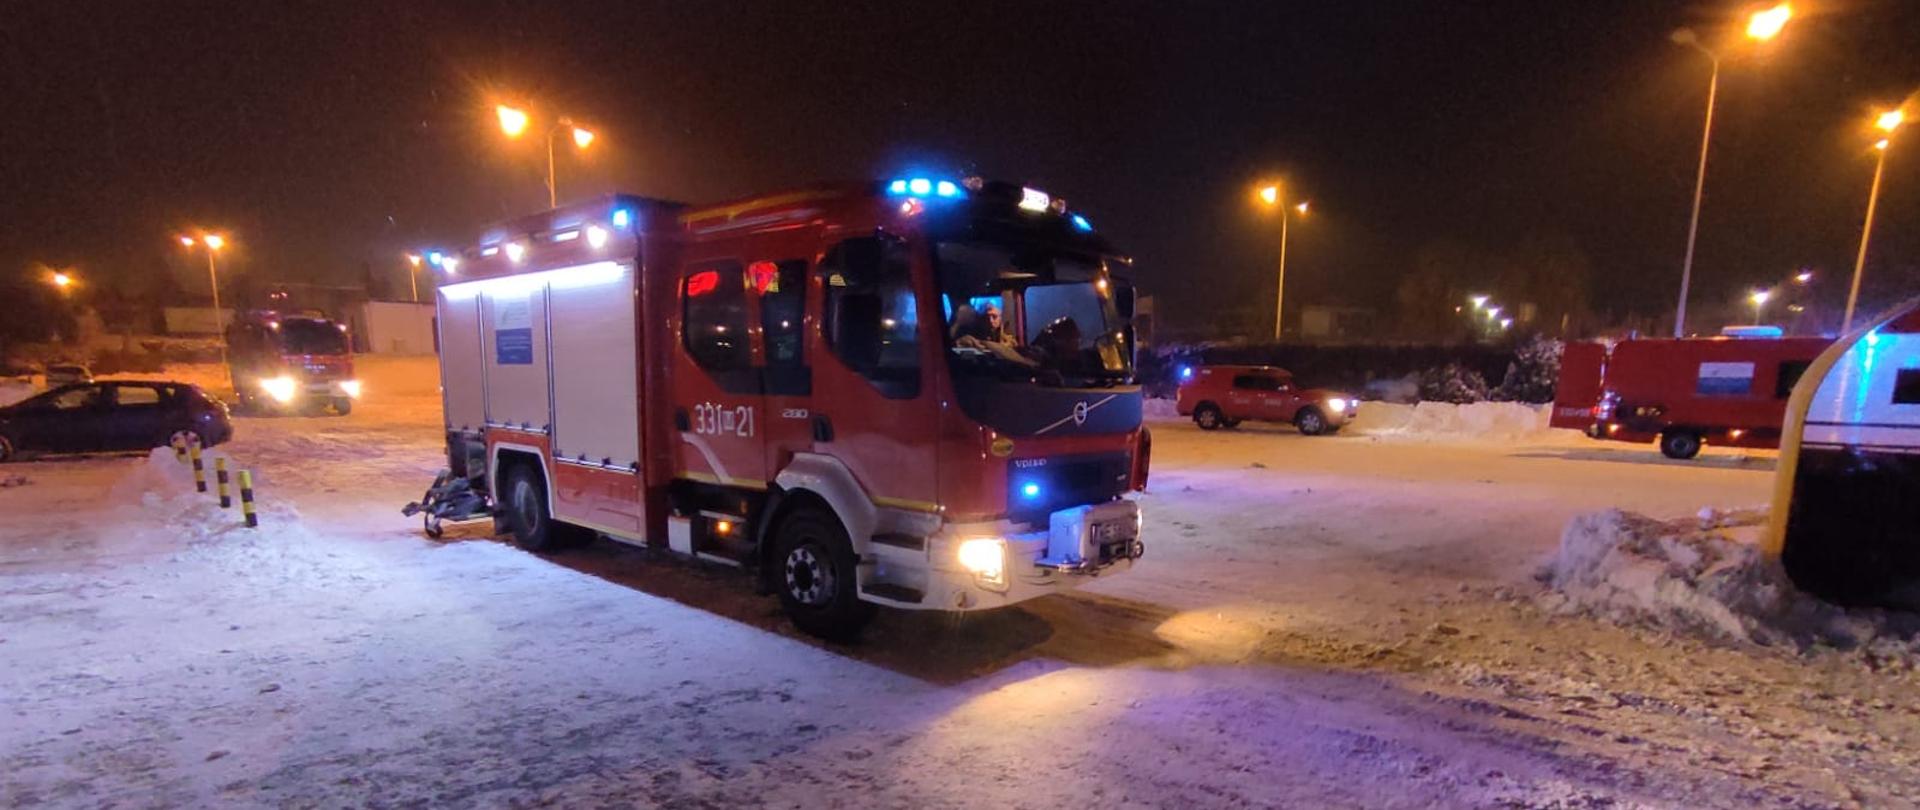 Na zdjęciu widać pojazdy ratowniczo – gaśnicze znajdujące się na parkingu przed obiektem, w którym doszło do pożaru. Pojazdy w kolorze czerwonym z włączonymi niebieskimi światłami sygnalizacji alarmowej. Parking pokrywa warstwa śniegu. Zdjęcie wykonane w porze nocnej. 